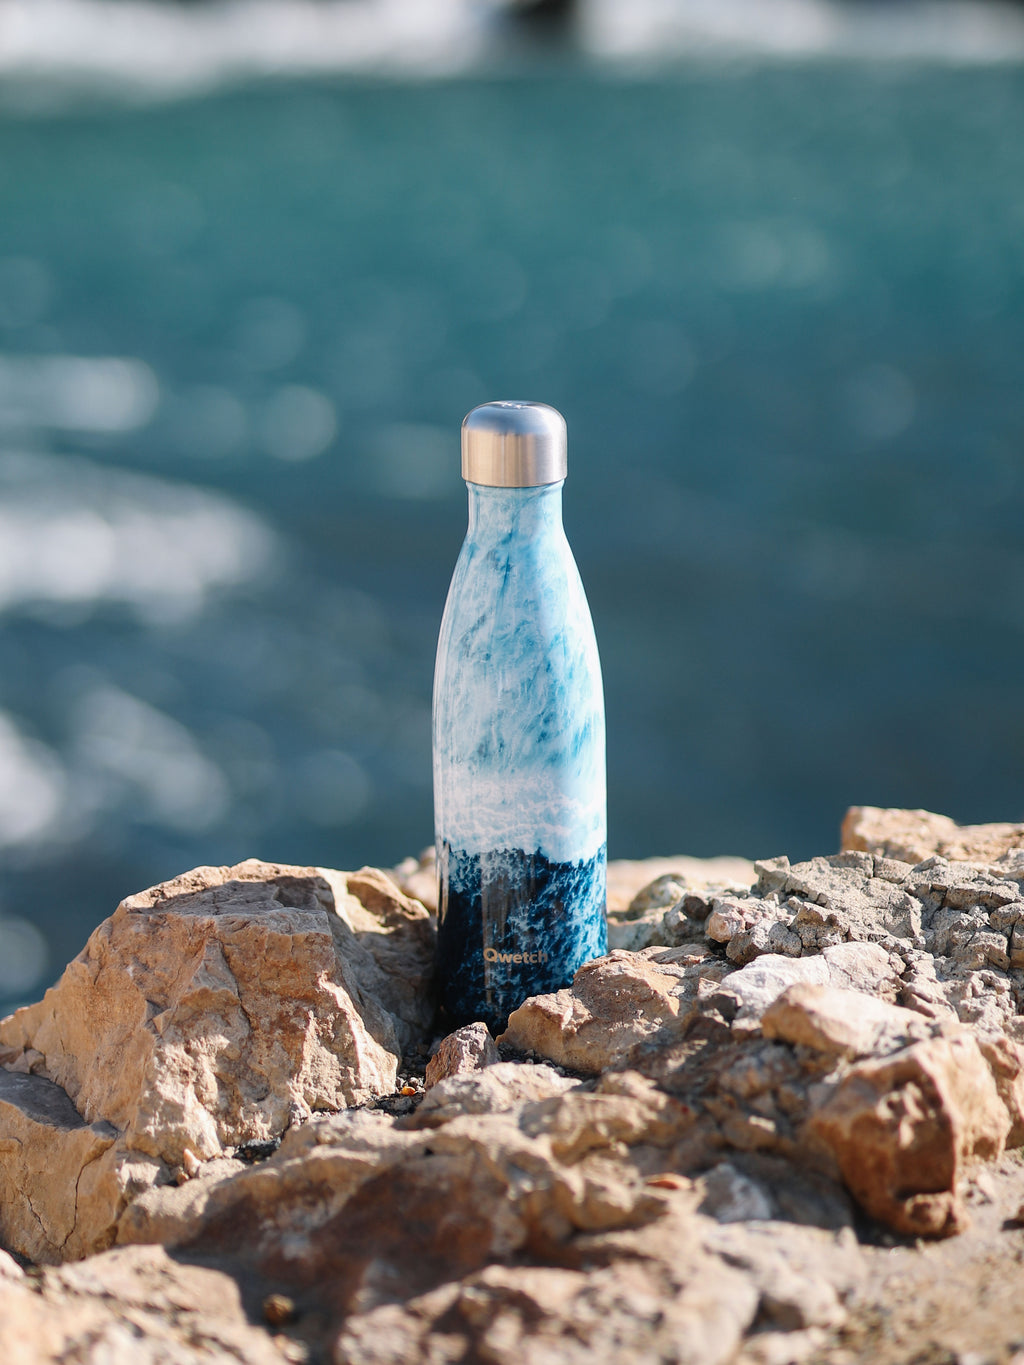 Insulated Bottle - Originals Ocean Lover